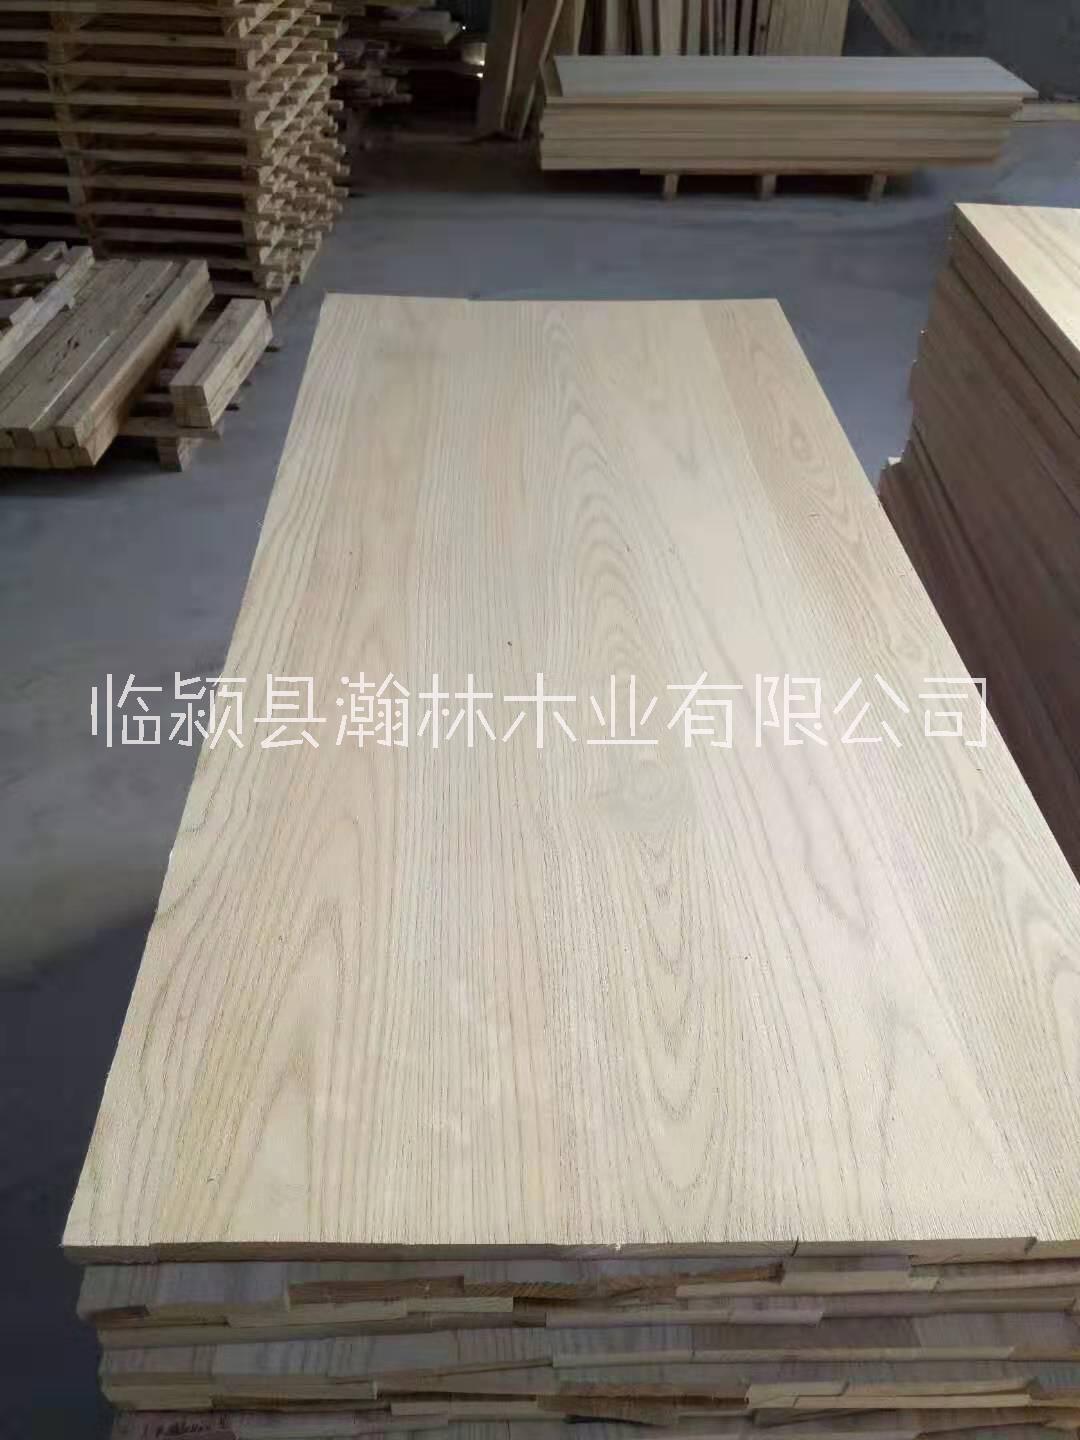 椿木拼板河南漯河厂家可根据家具板材尺寸定制生产 白椿木拼板图片